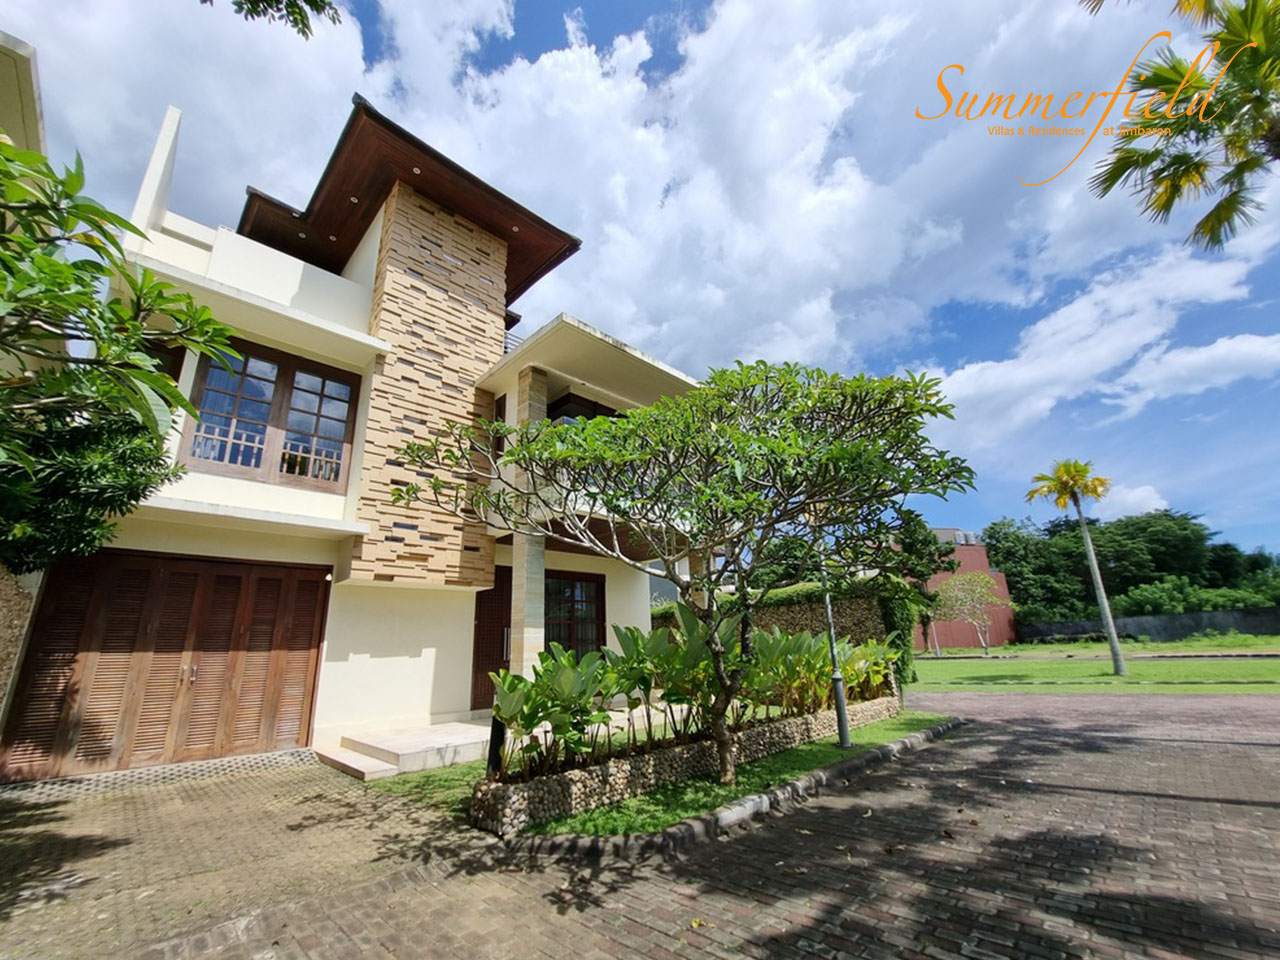 summerfield villas & residence jimbaran